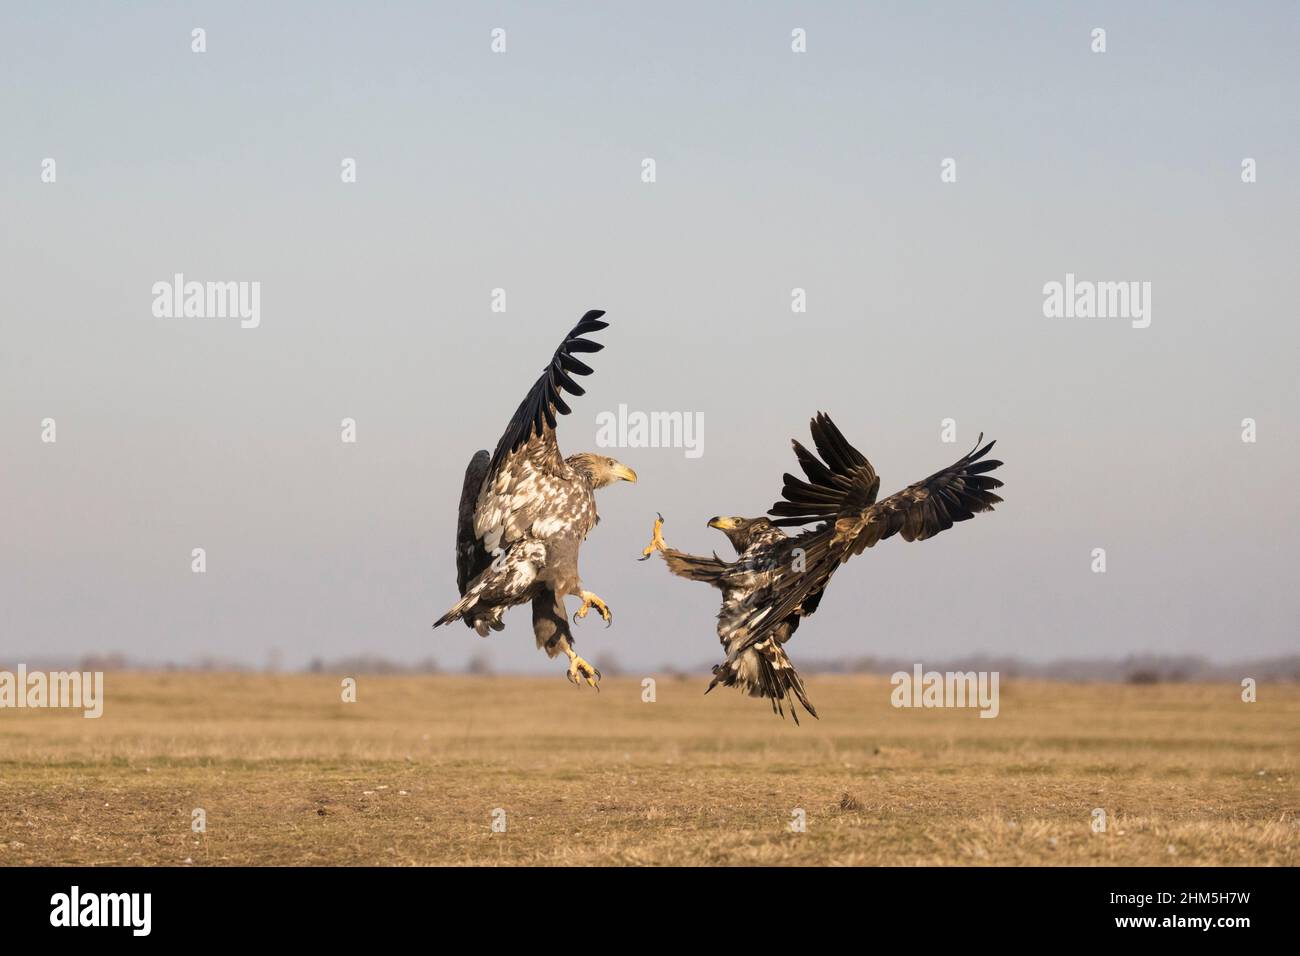 White-tailed eagle Haliaeetus albicilla, 2 immatures fighting, Hortobagy, Hungary, January Stock Photo